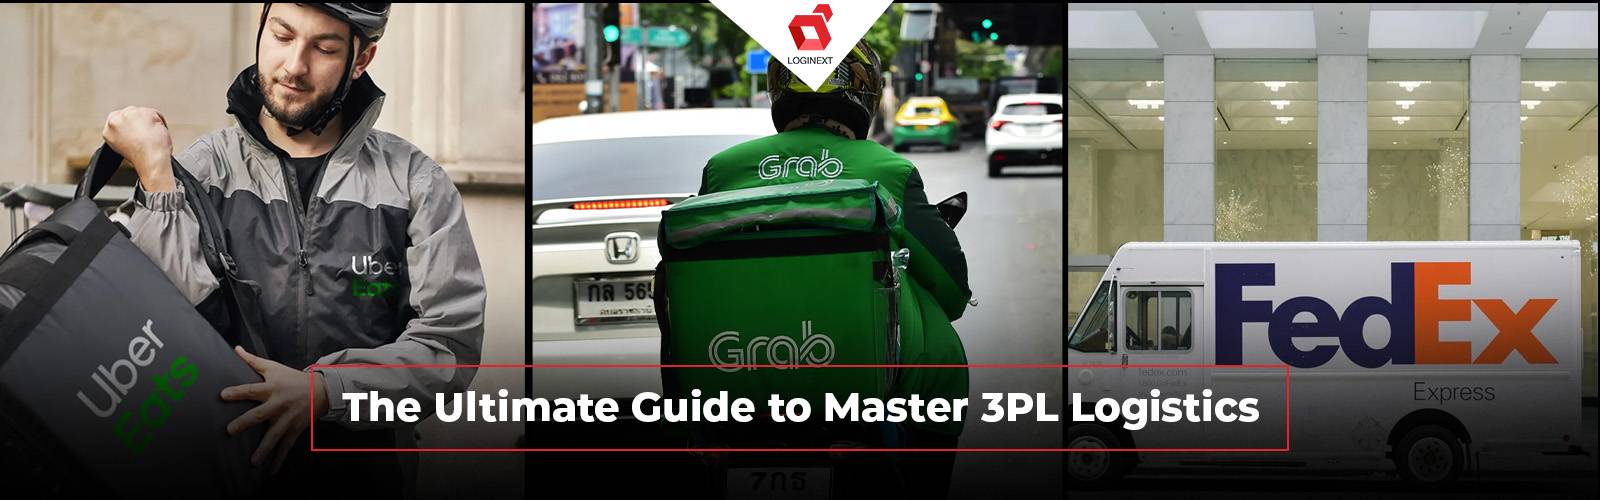 Den ultimata guiden till Master 3PL Logistics